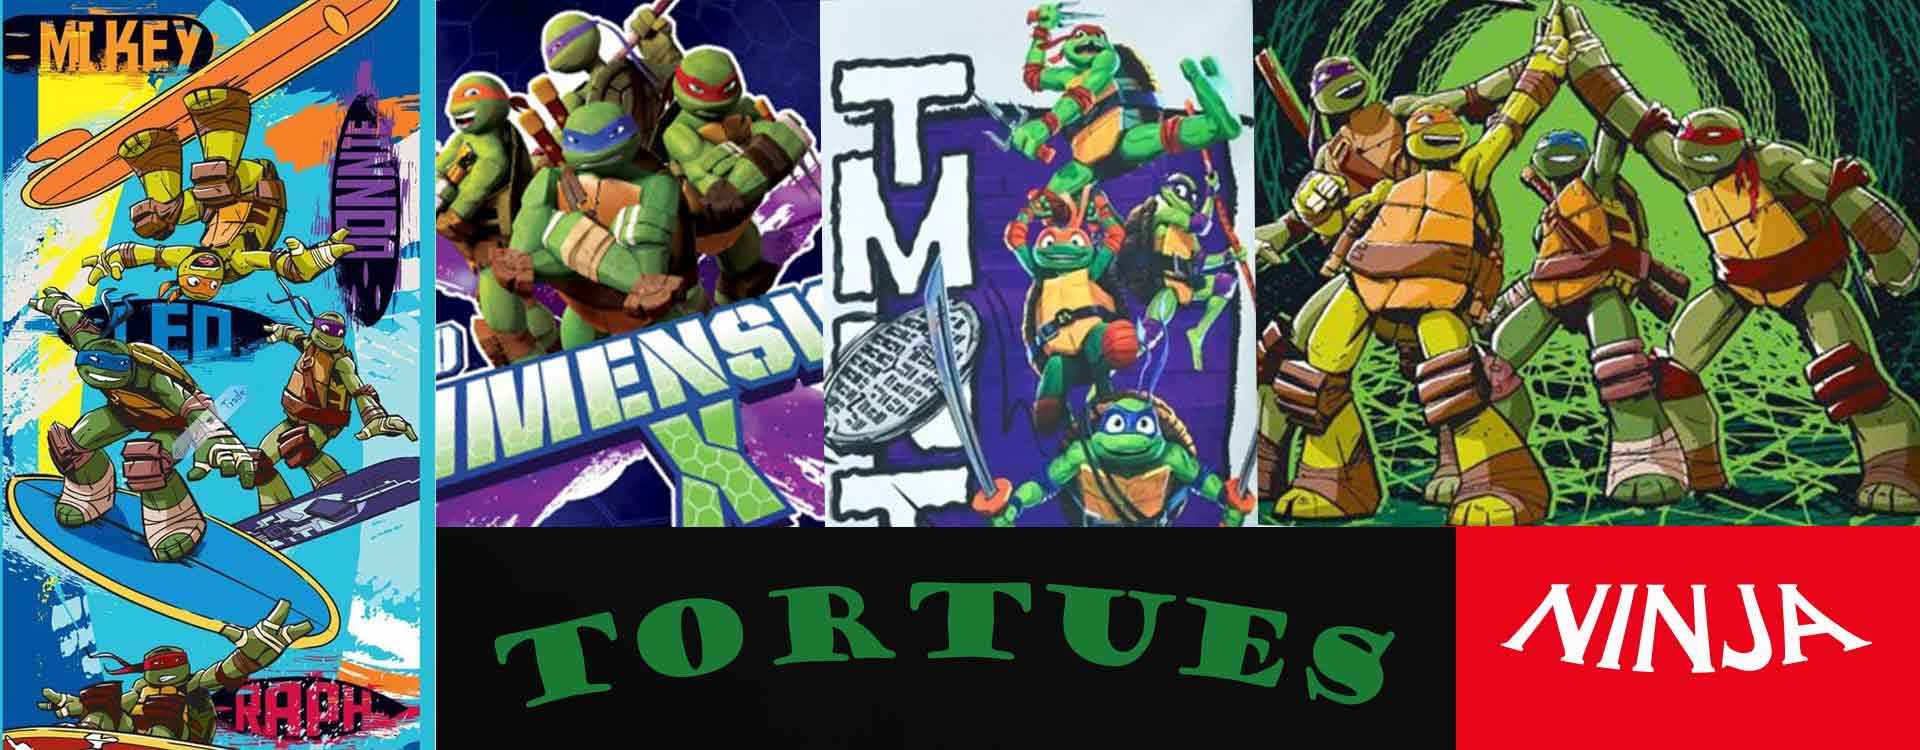 La storia delle Teenage Mutant Ninja Turtles: dalle fogne oscure